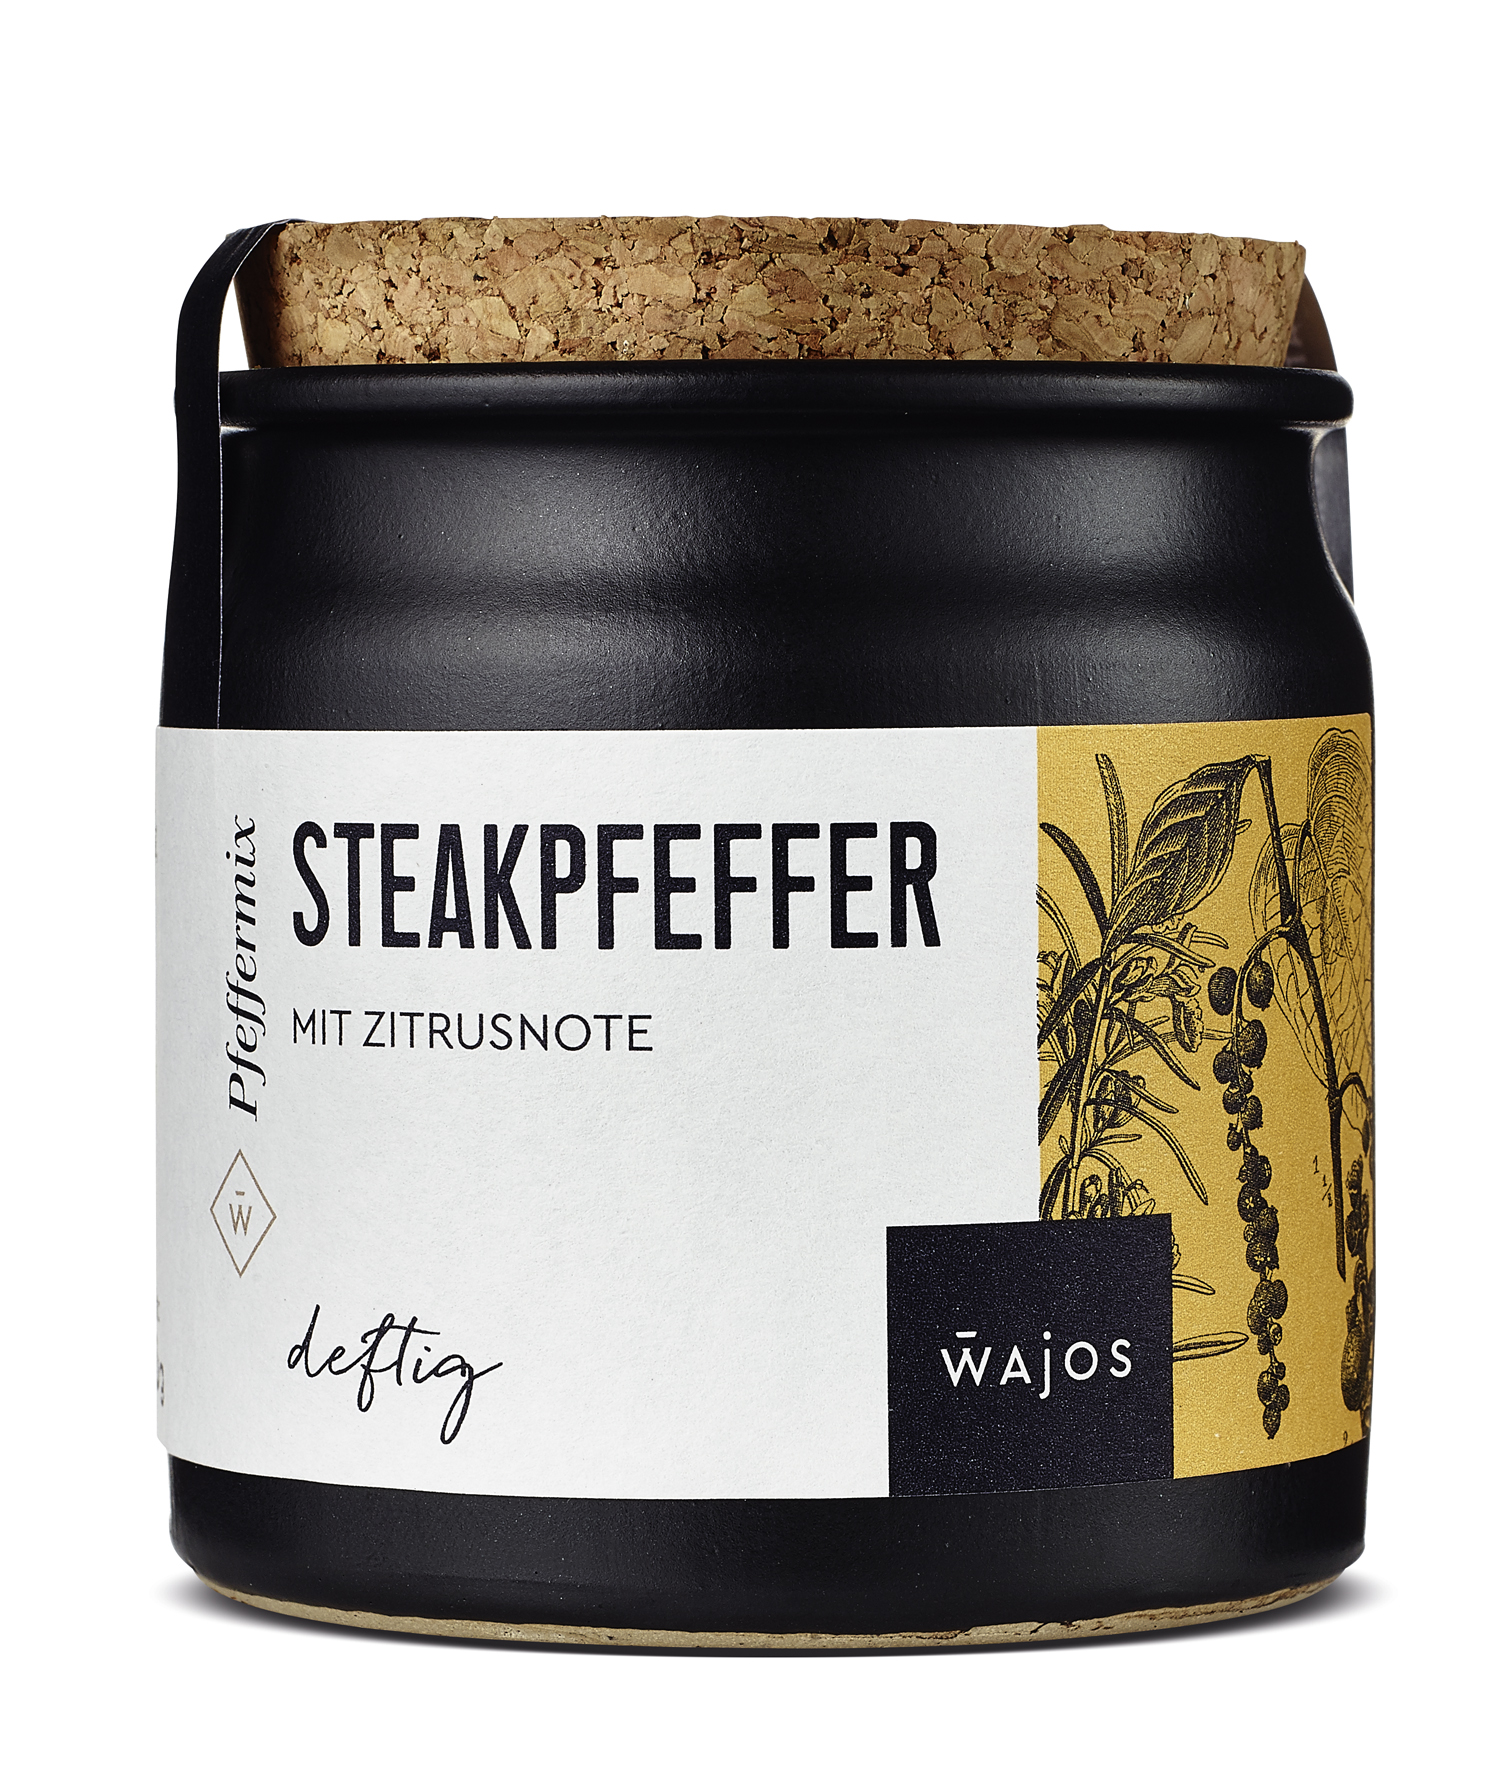 WAJOS - Steak Pfeffer 60g Würzmischung  